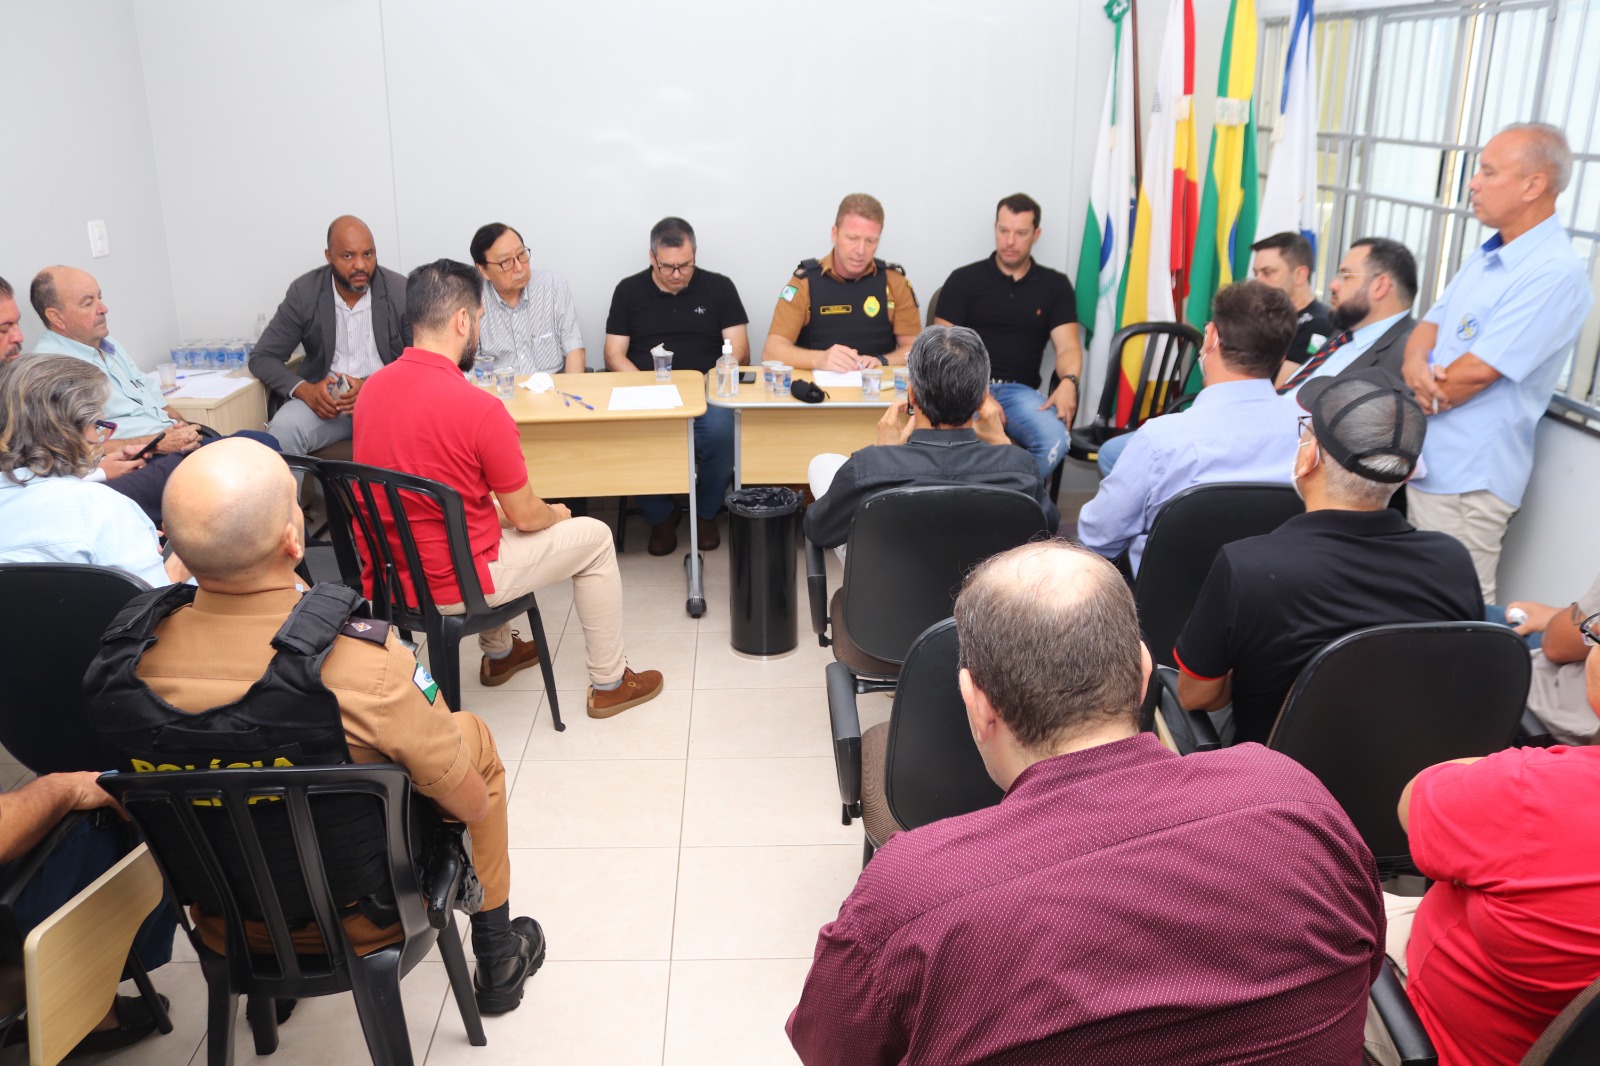 Sindicato lidera reunião com autoridades municipais, polícias e sociedade civil por mais segurança na região central de Maringá